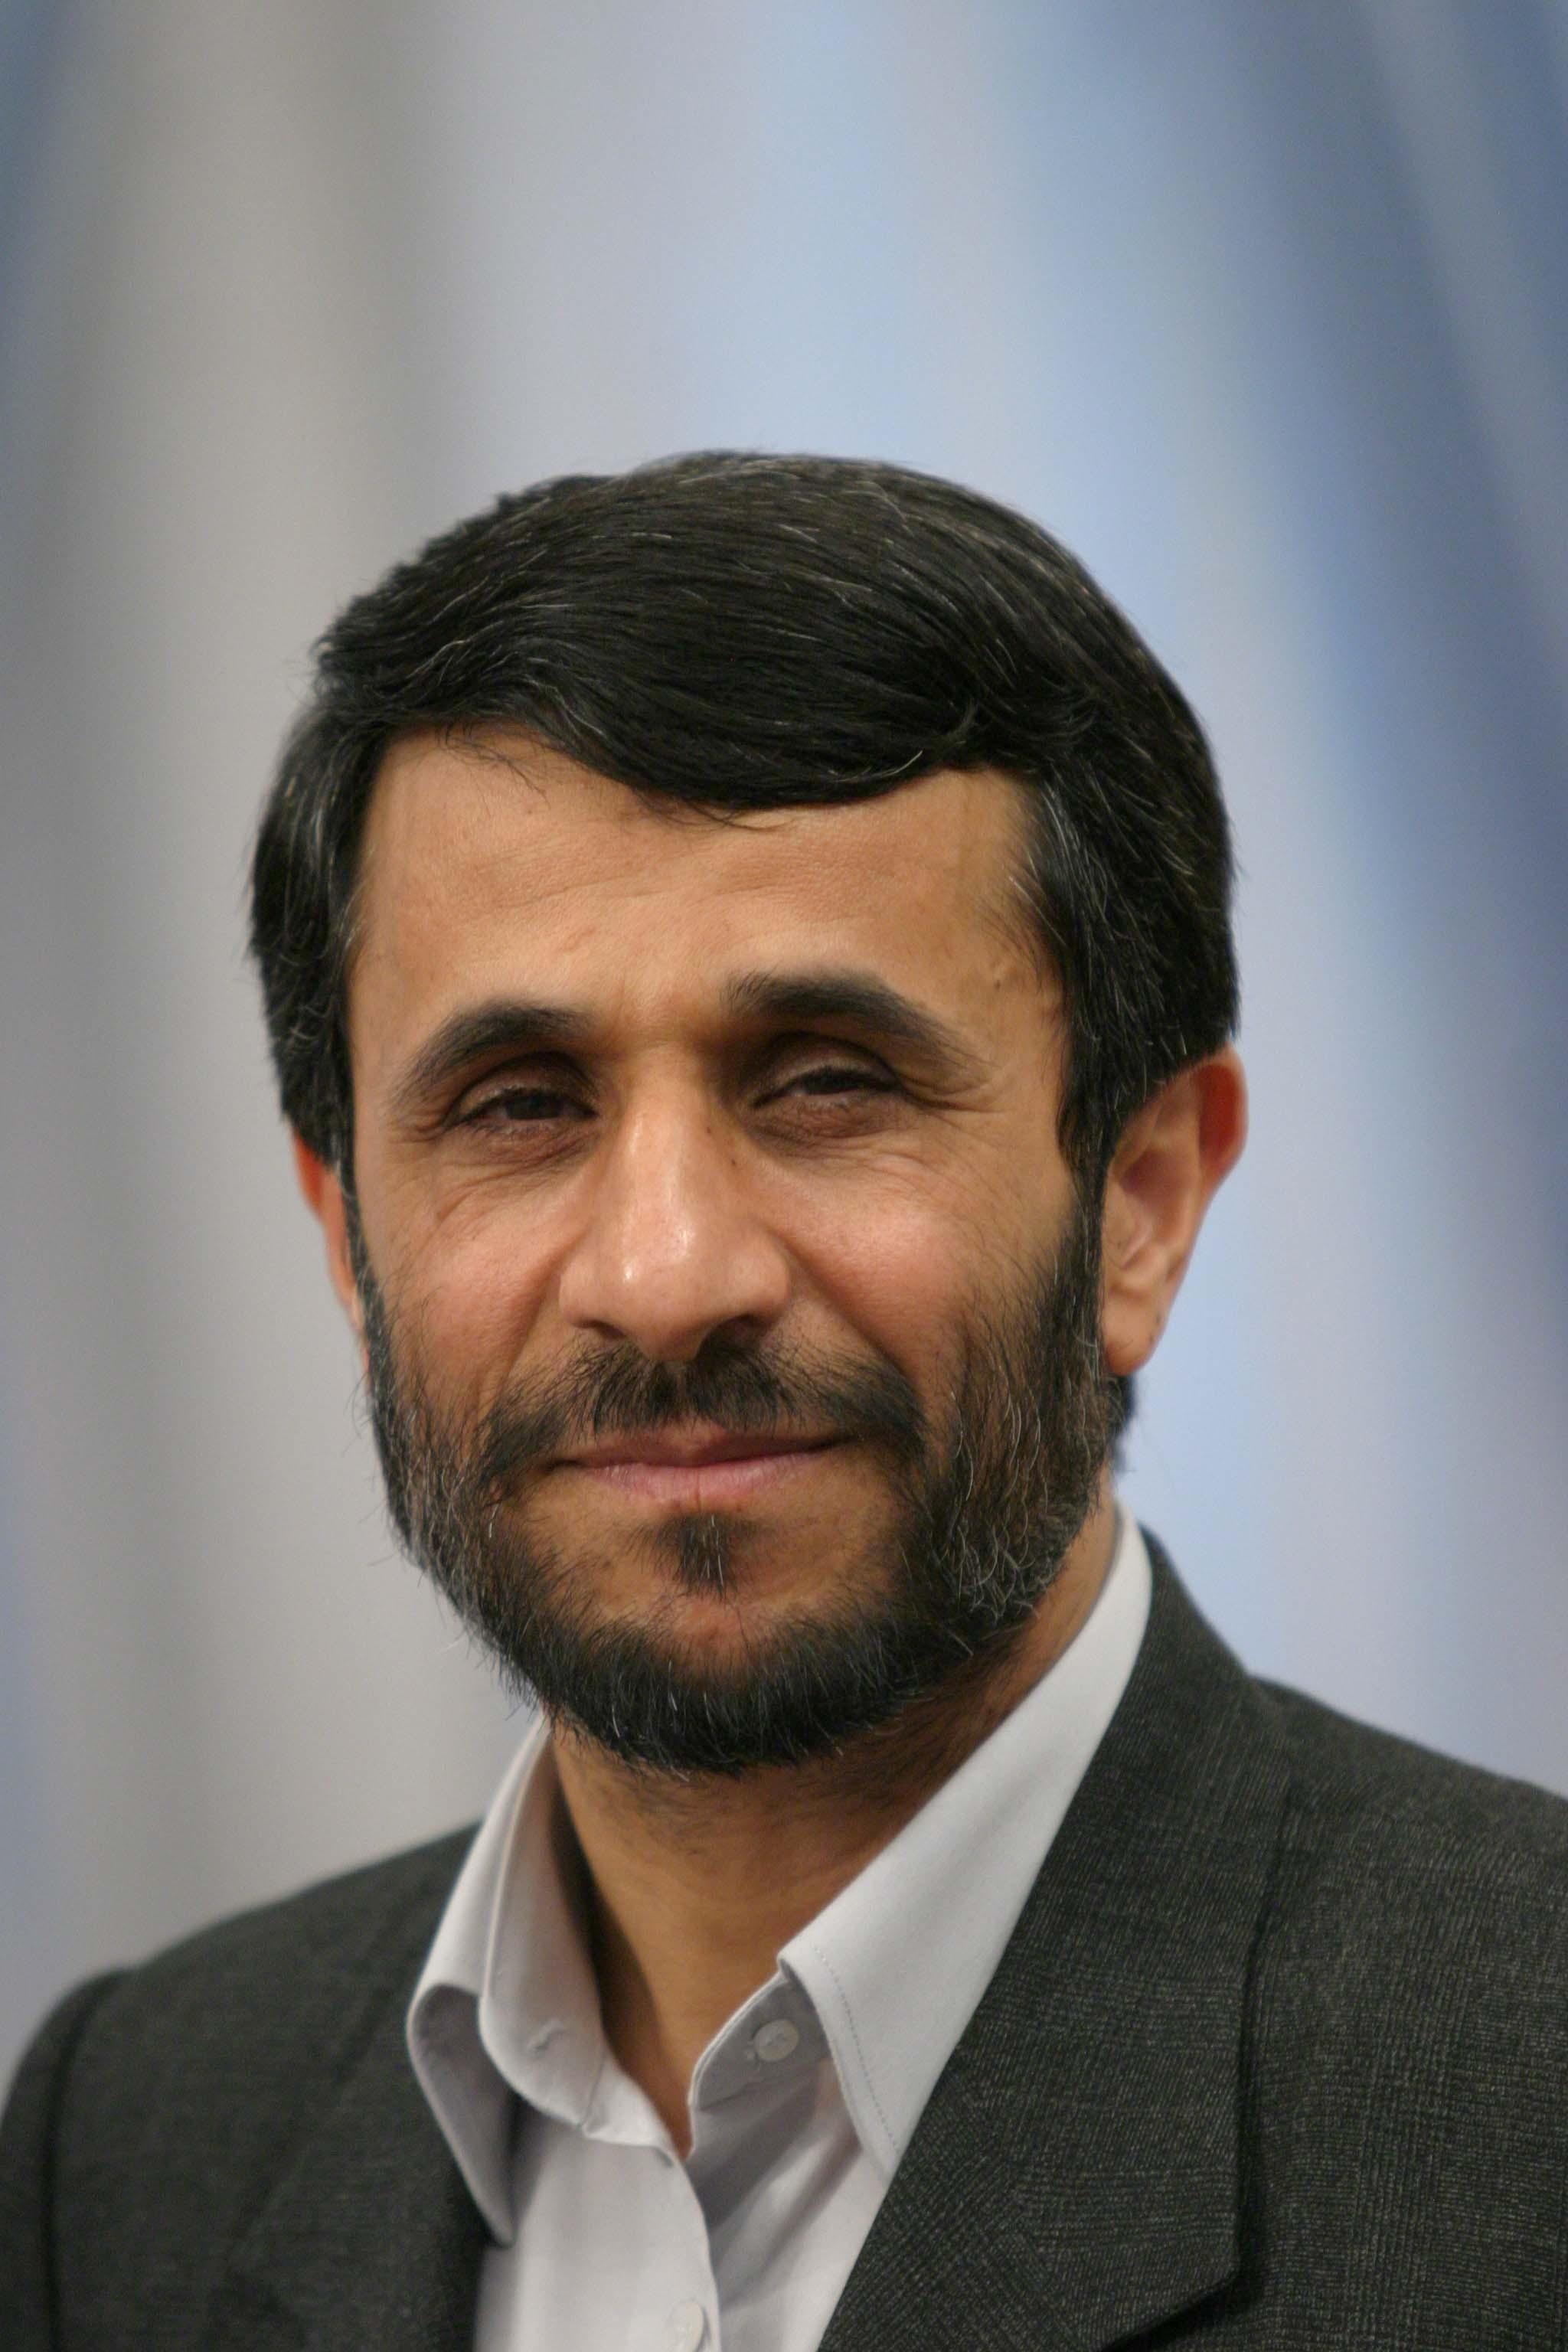 Hình ảnh mới nhất về Tổng thống Iran Mahmoud Ahmadinejad